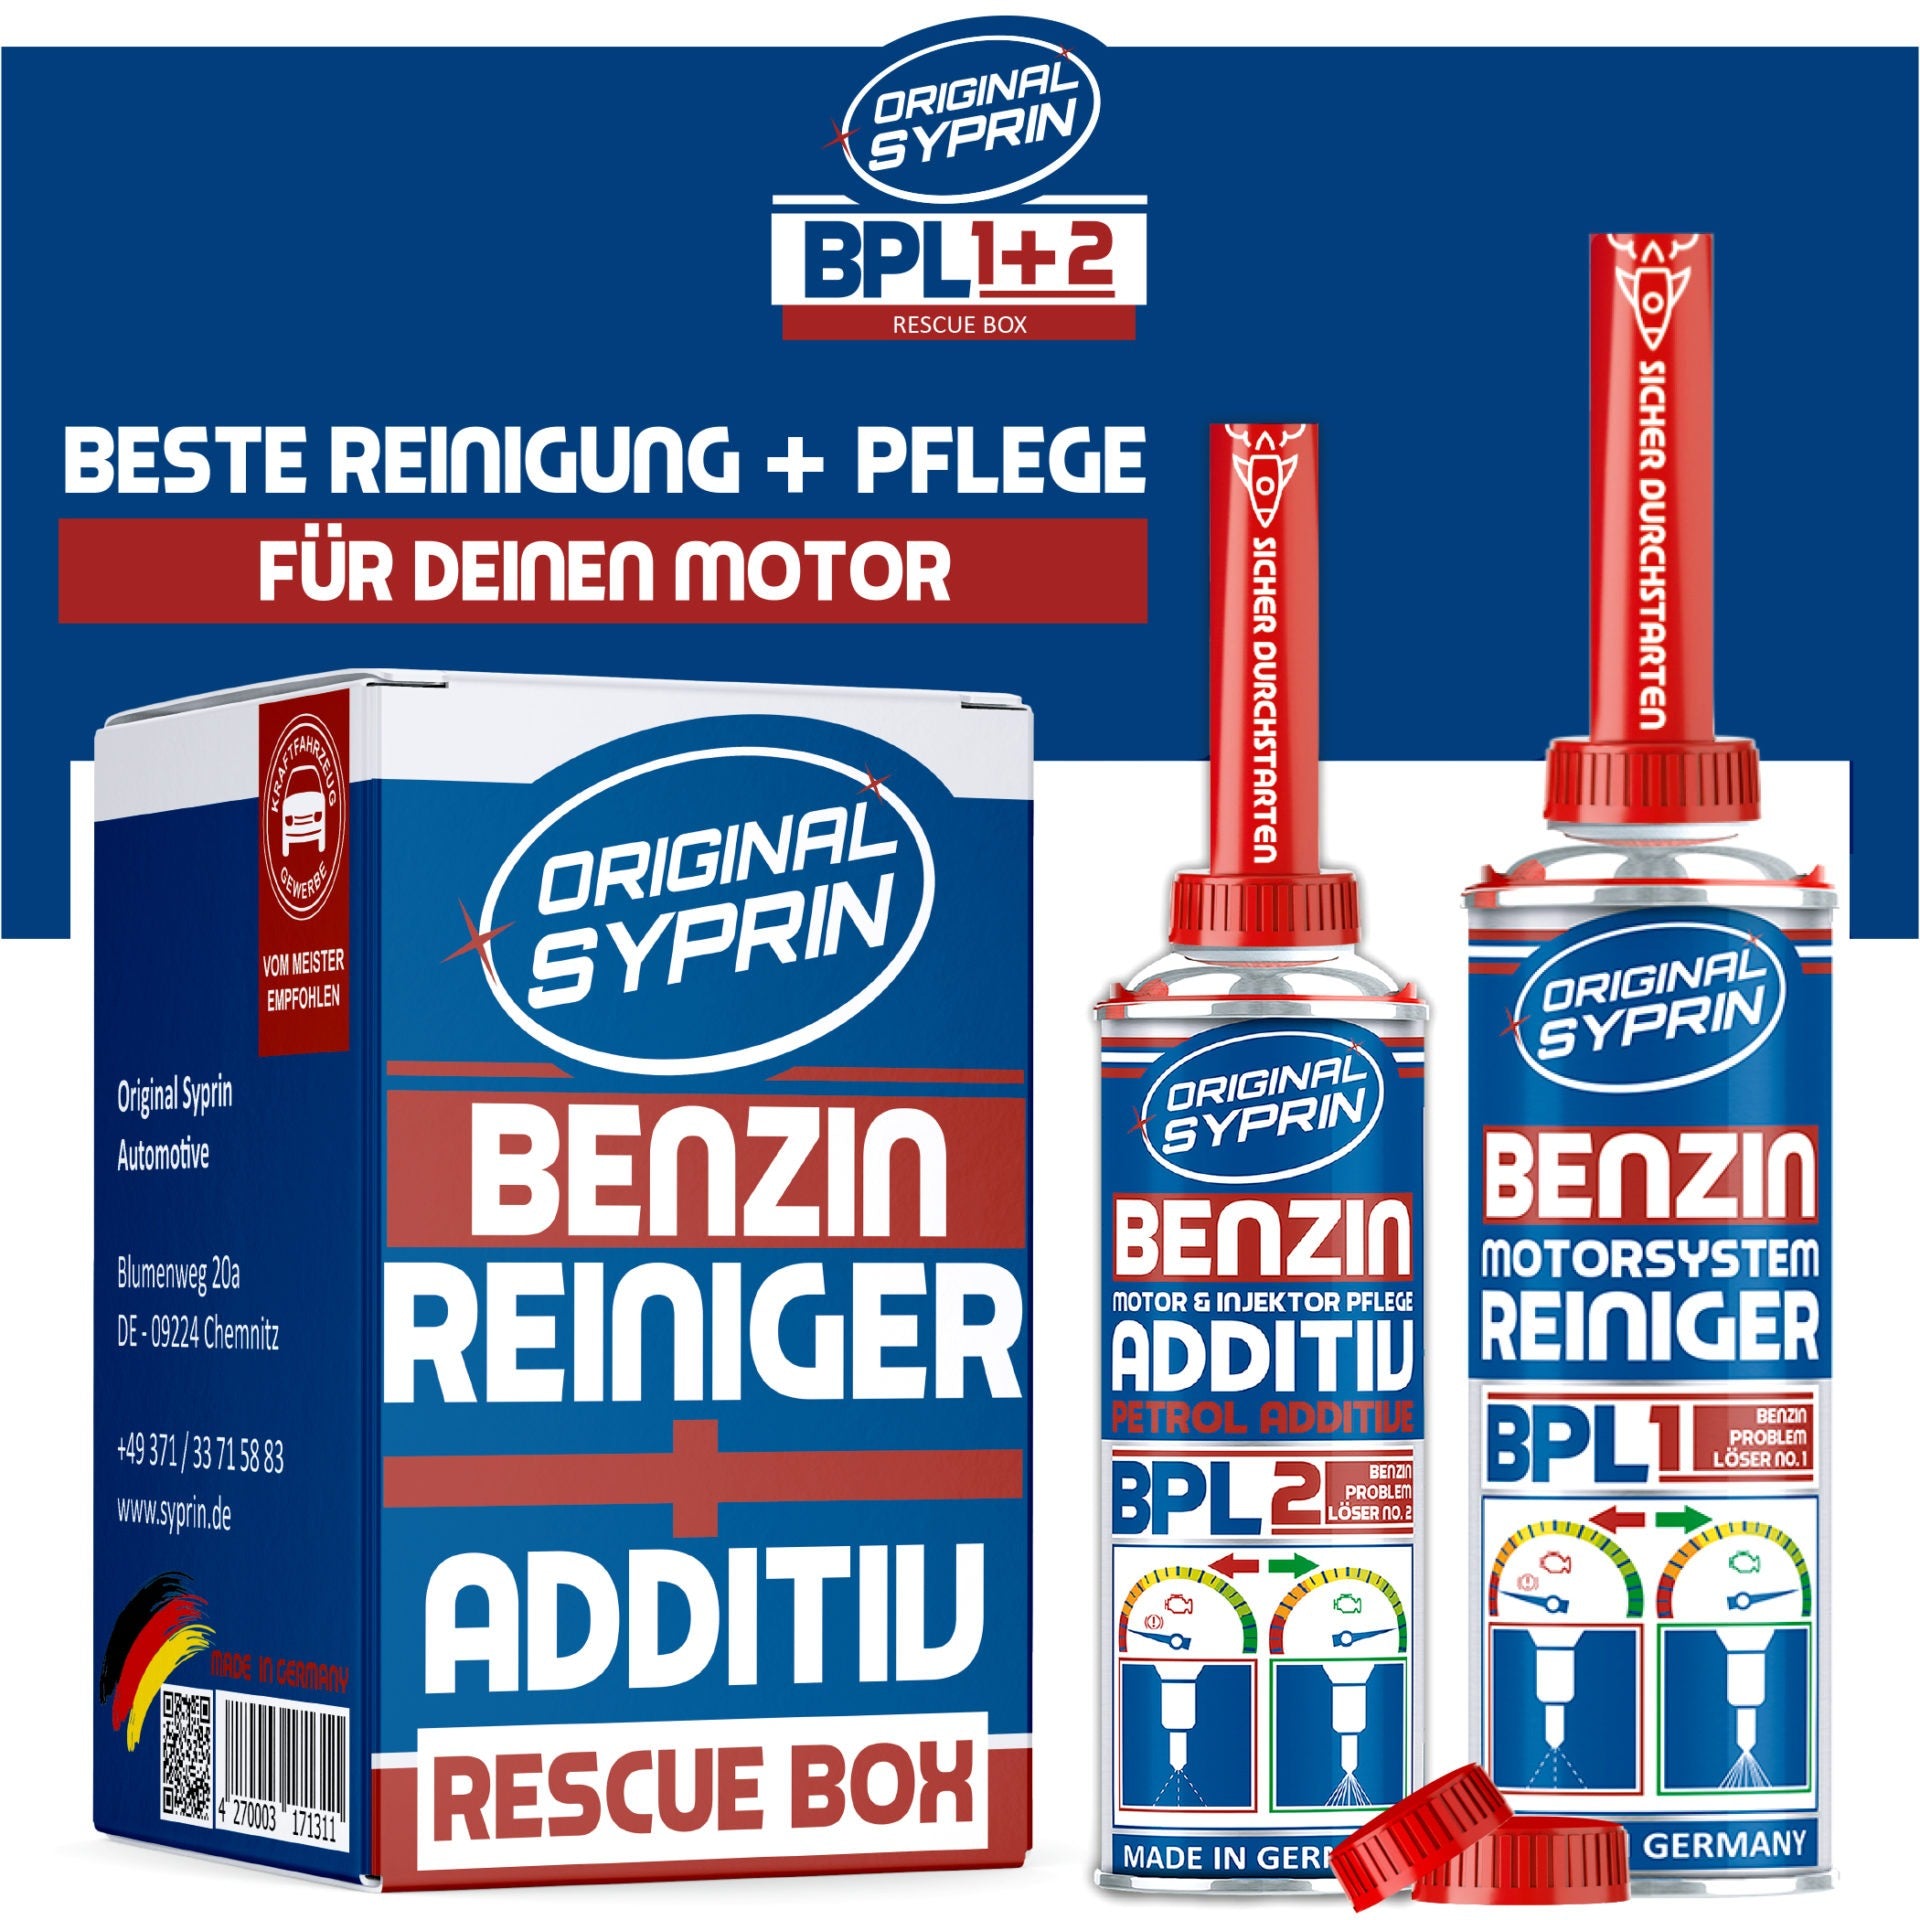 ORIGINAL SYPRIN Benzin Rescue Box - Reiniger und Additiv - 500ml + 250 ml